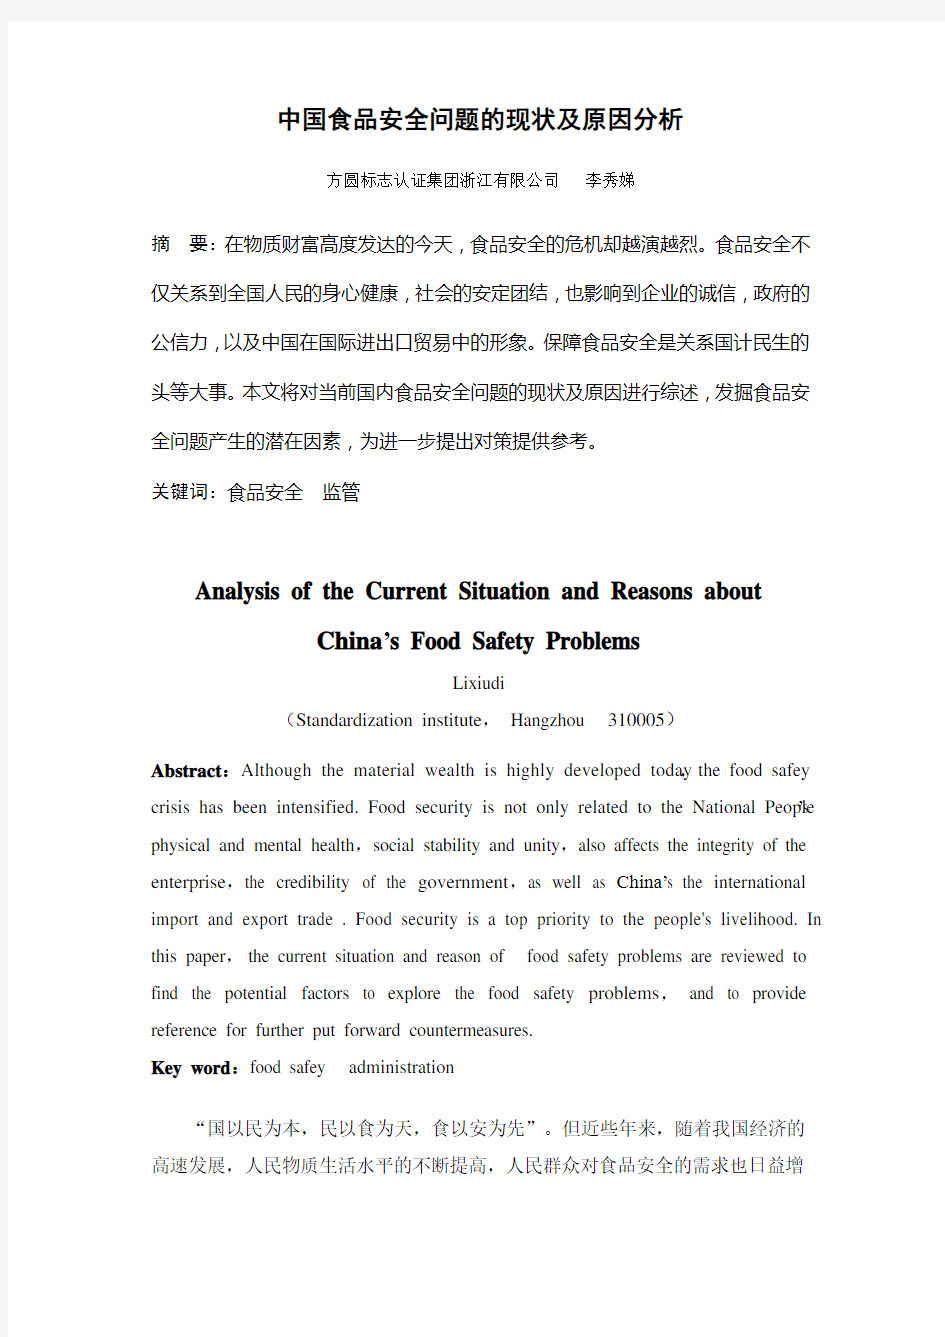 中国食品安全问题的现状及原因分析